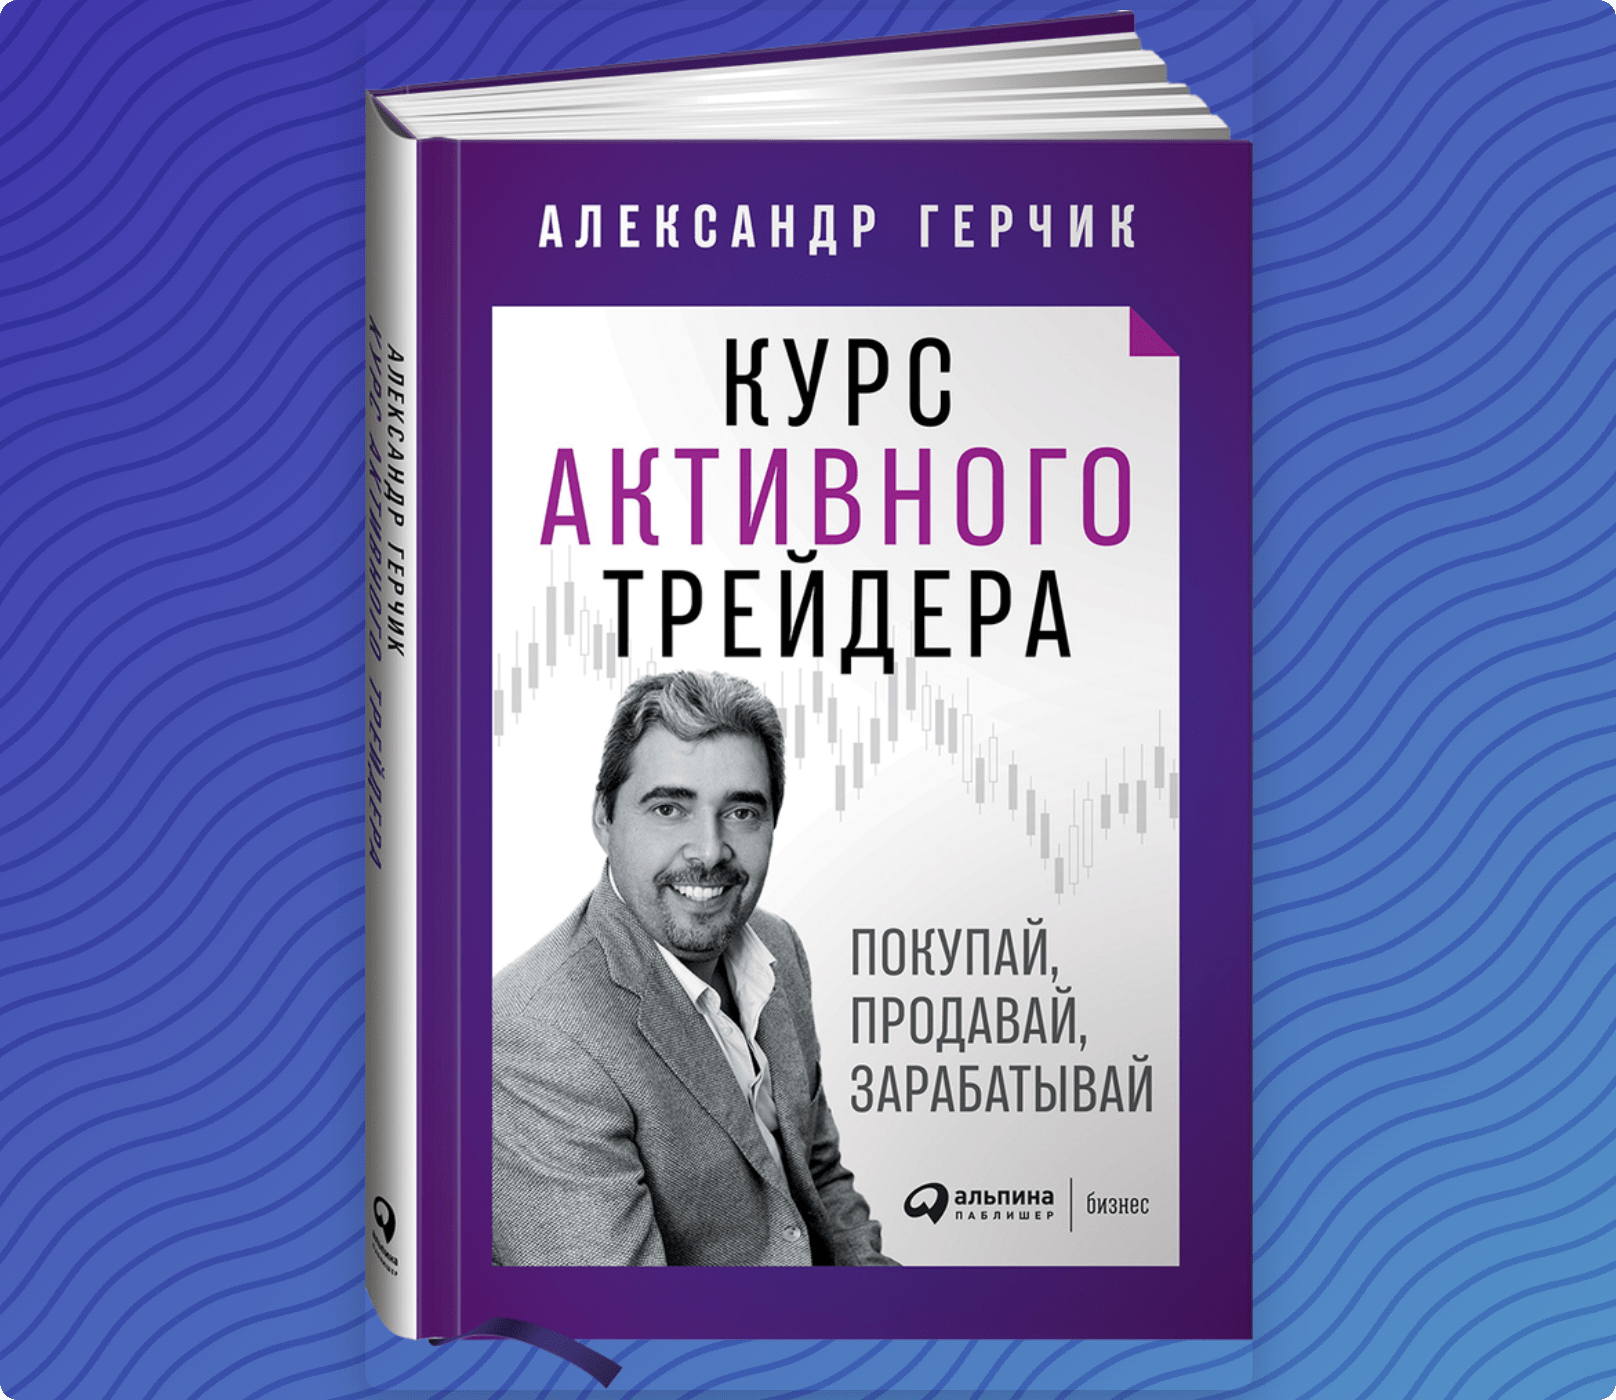 Книга Александра Герчика